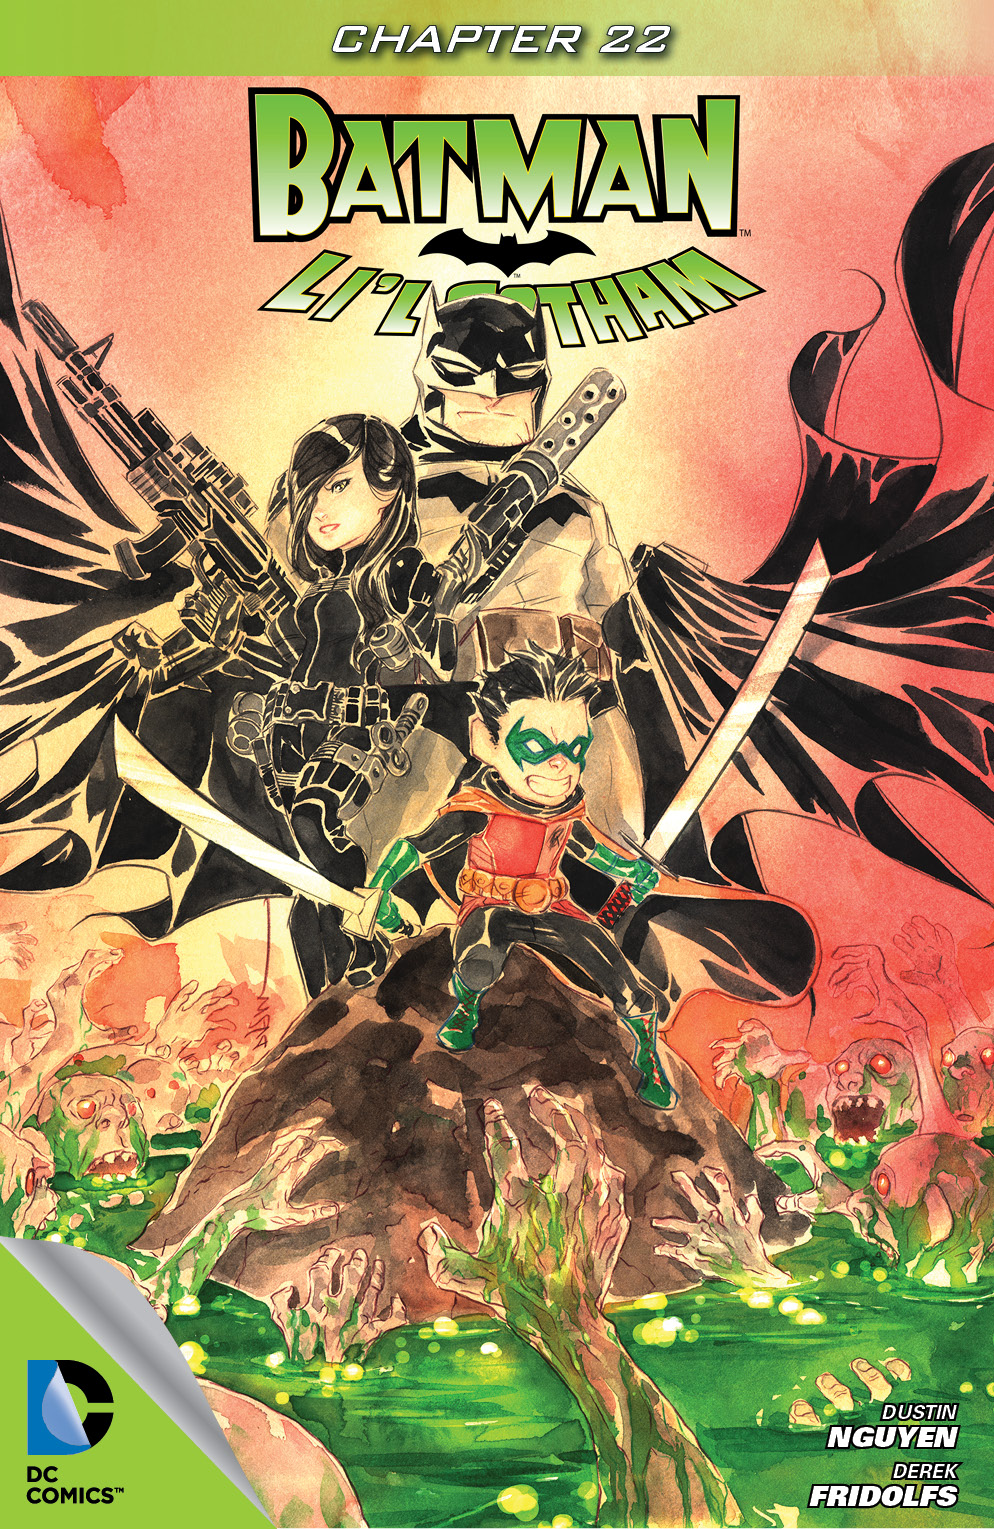 Batman: Li'l Gotham #22 preview images